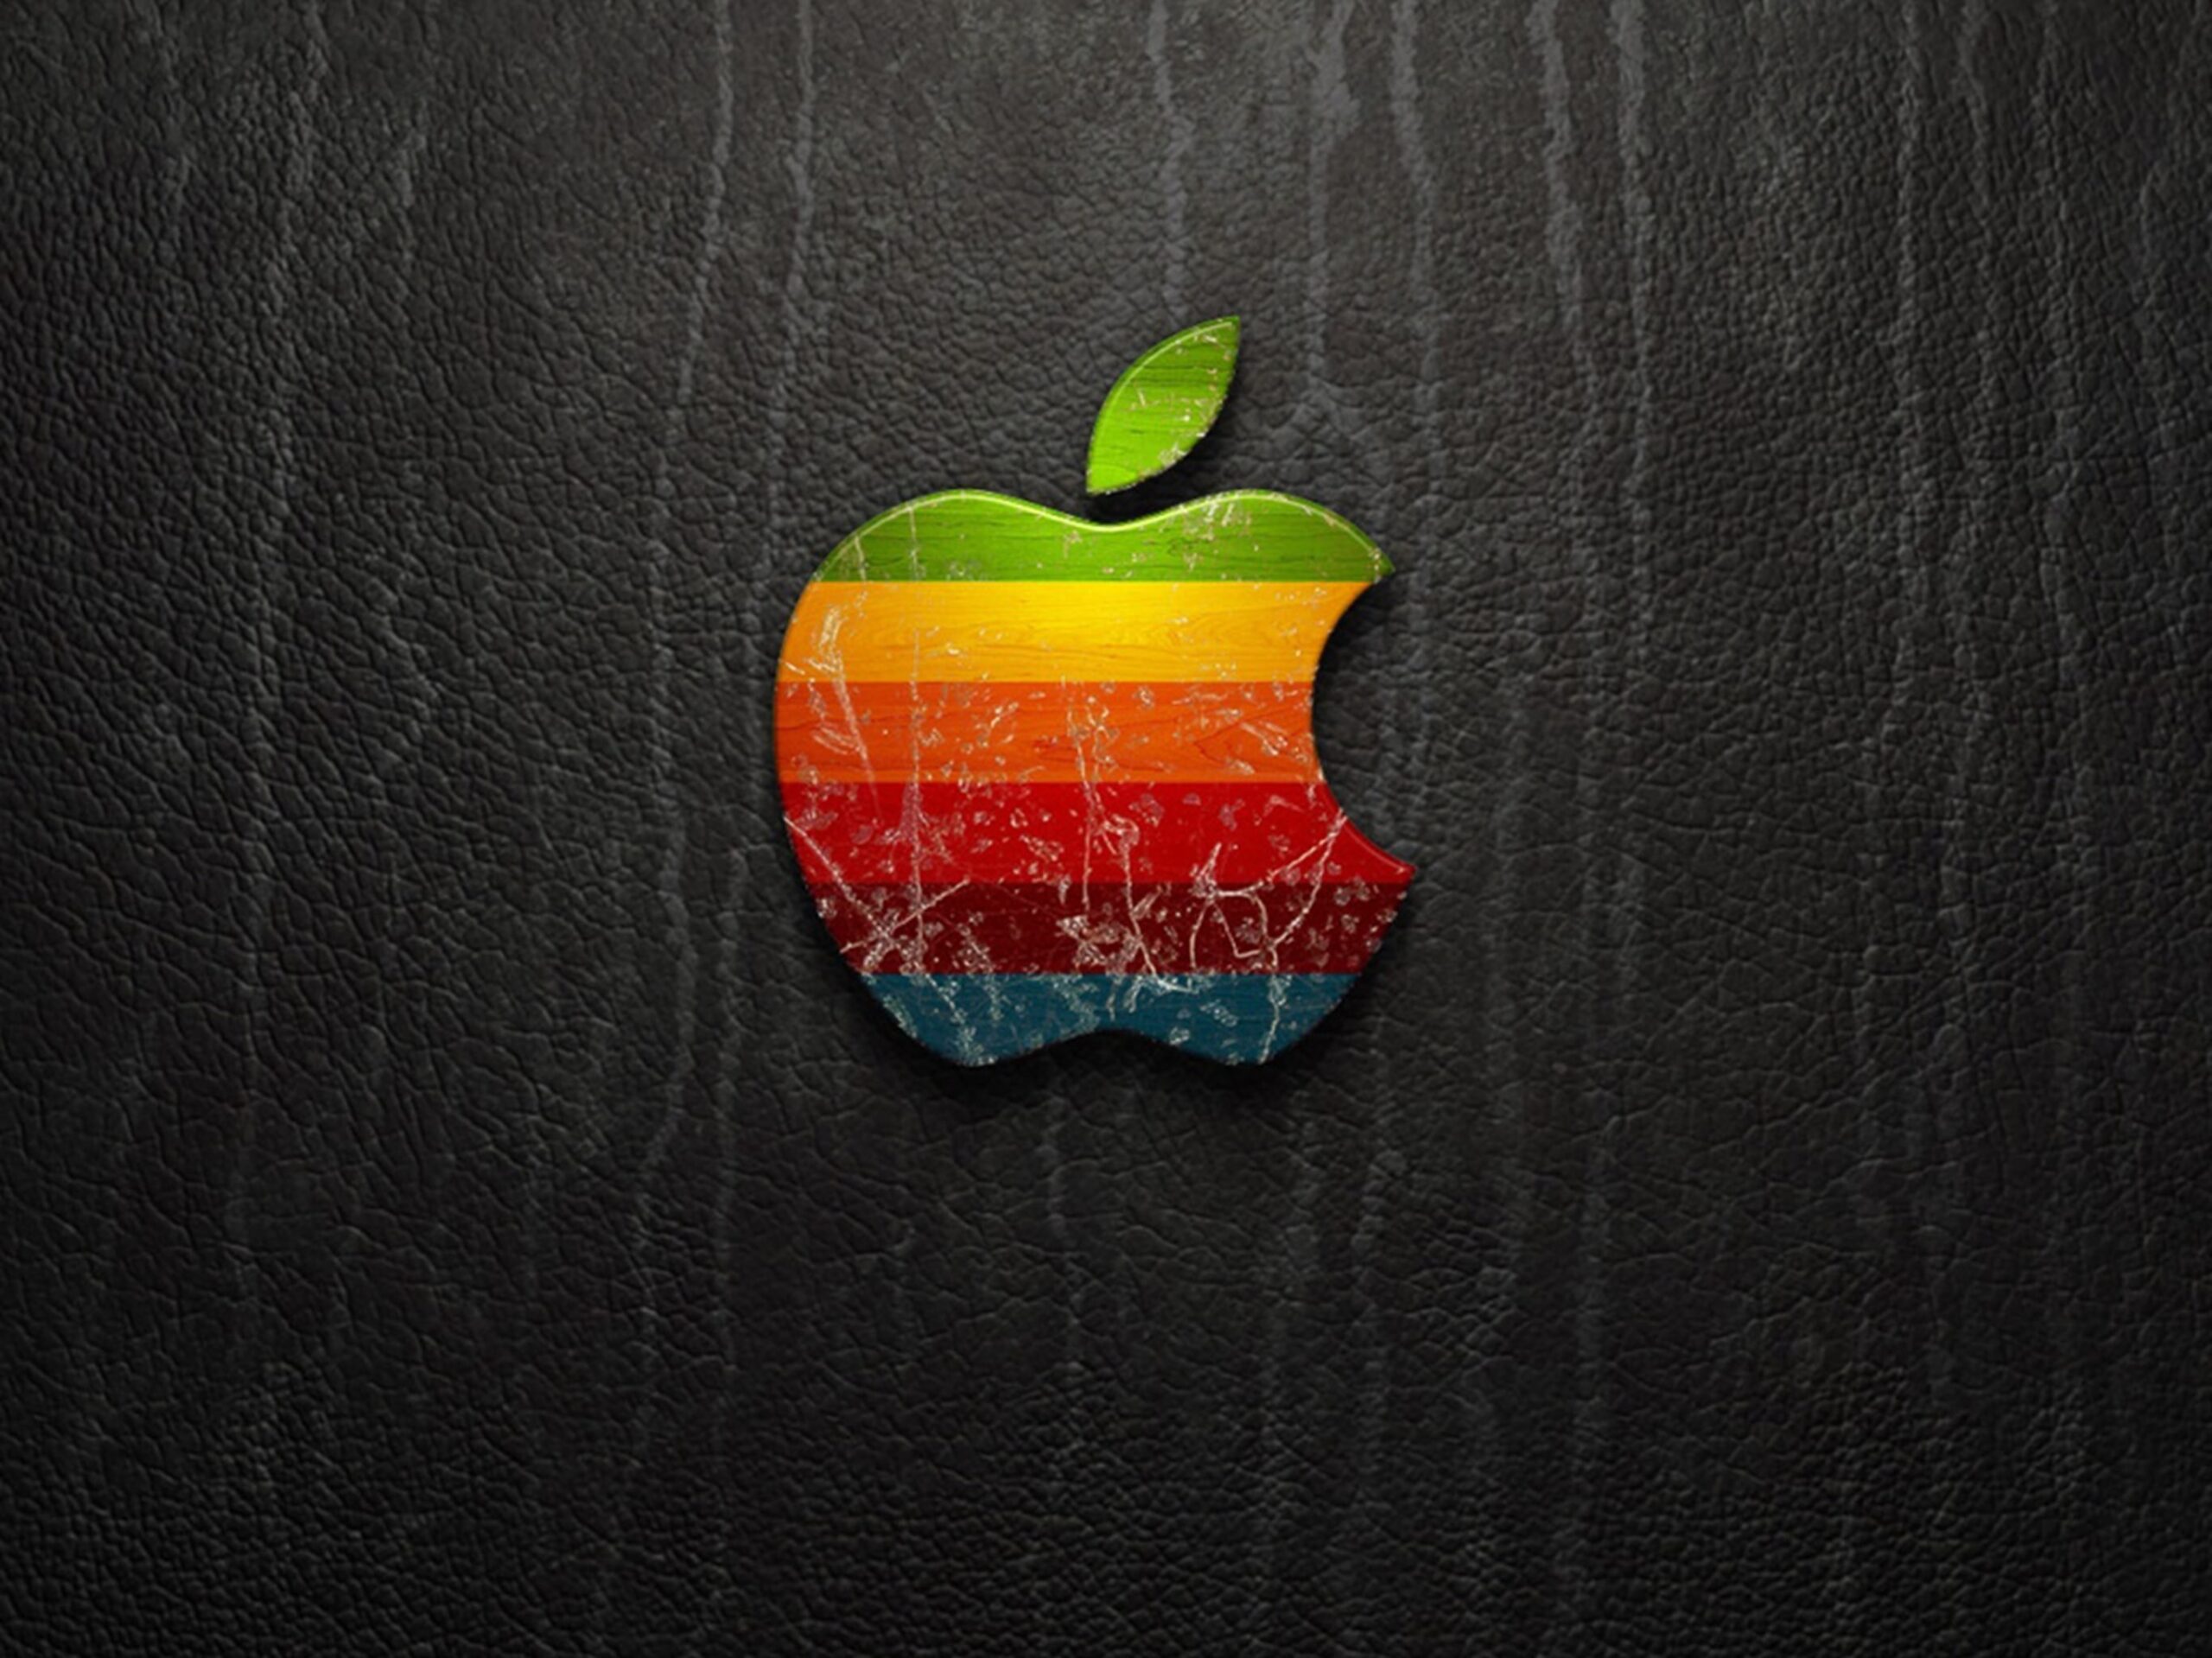 Lý do khiến logo Apple bị cắn mất góc